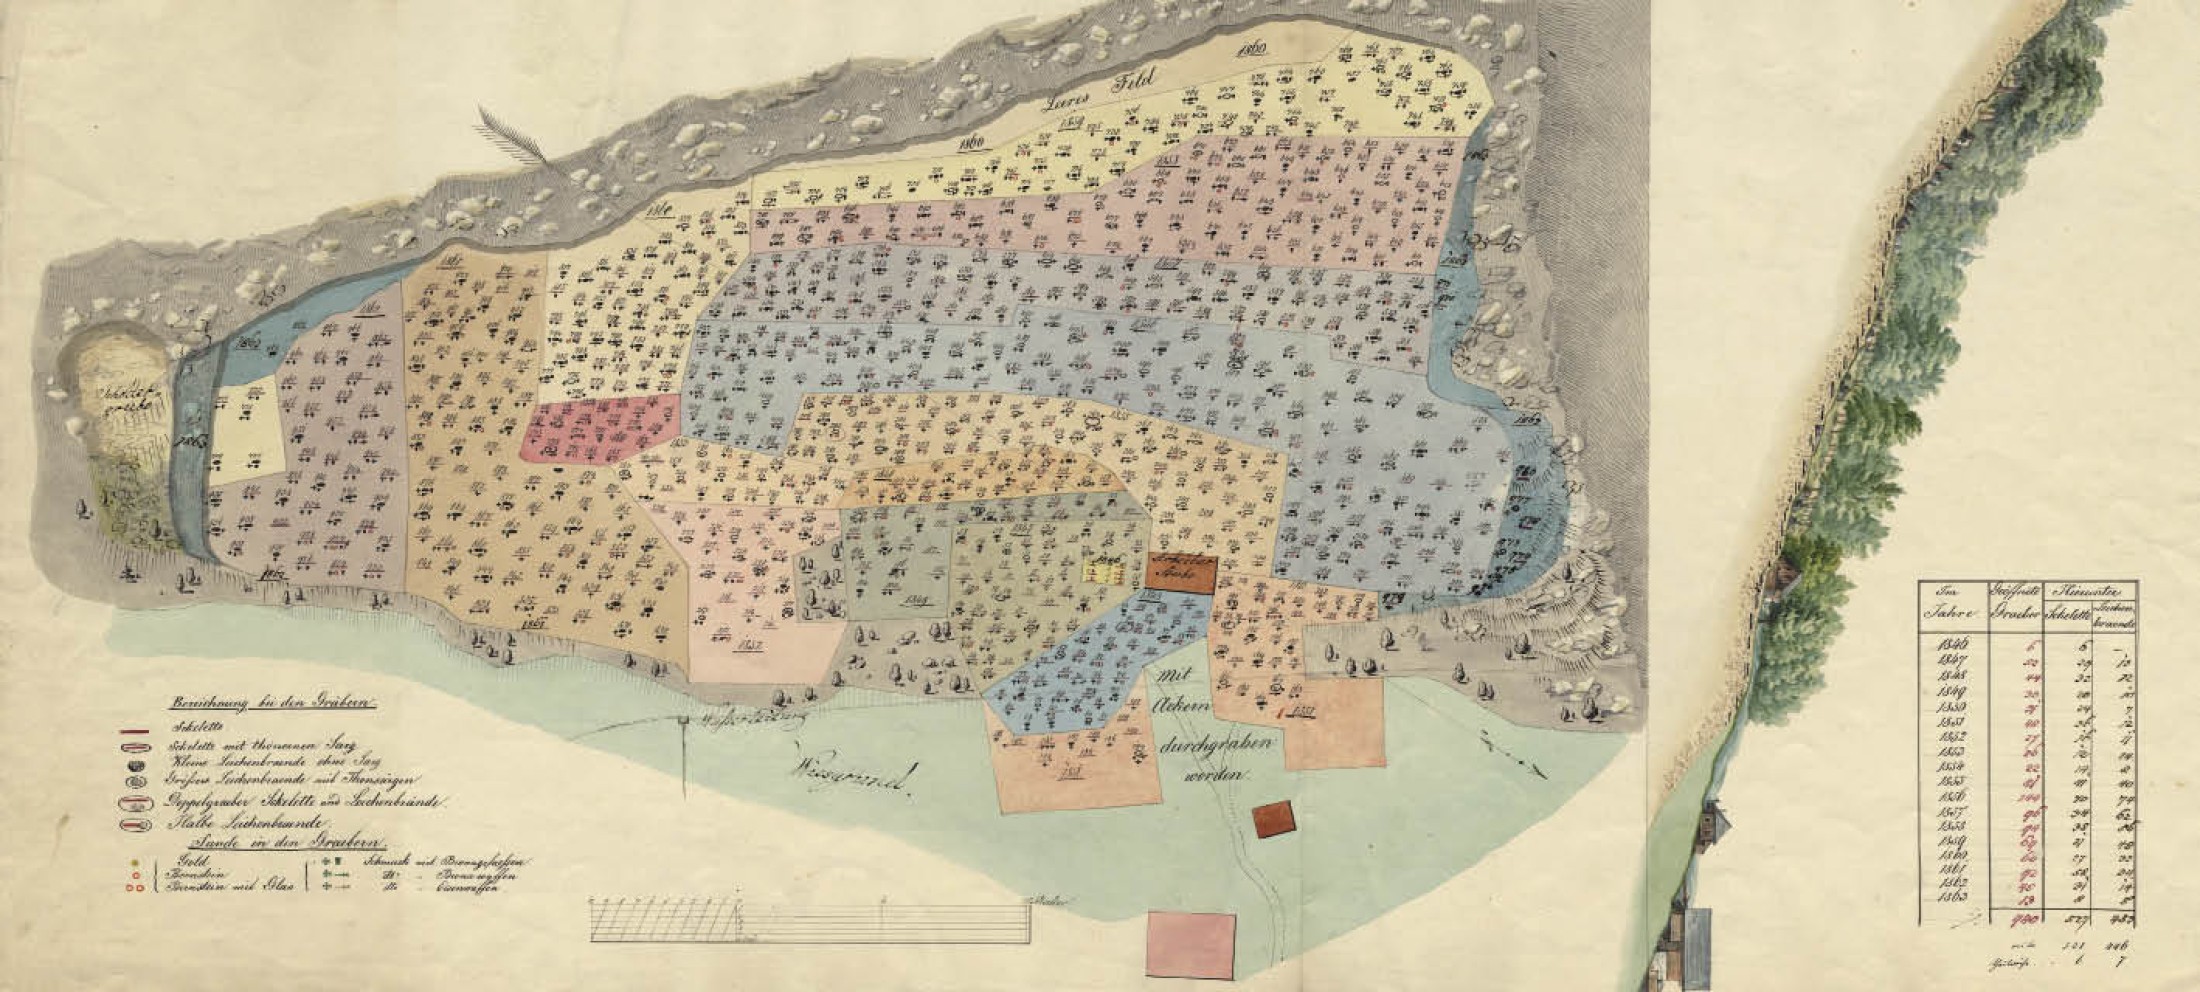 : Gesamtplan des Gräberfeldes aus den Jahren 1846 bis 1863 (Bild: Fundaktenarchiv PA NHM)